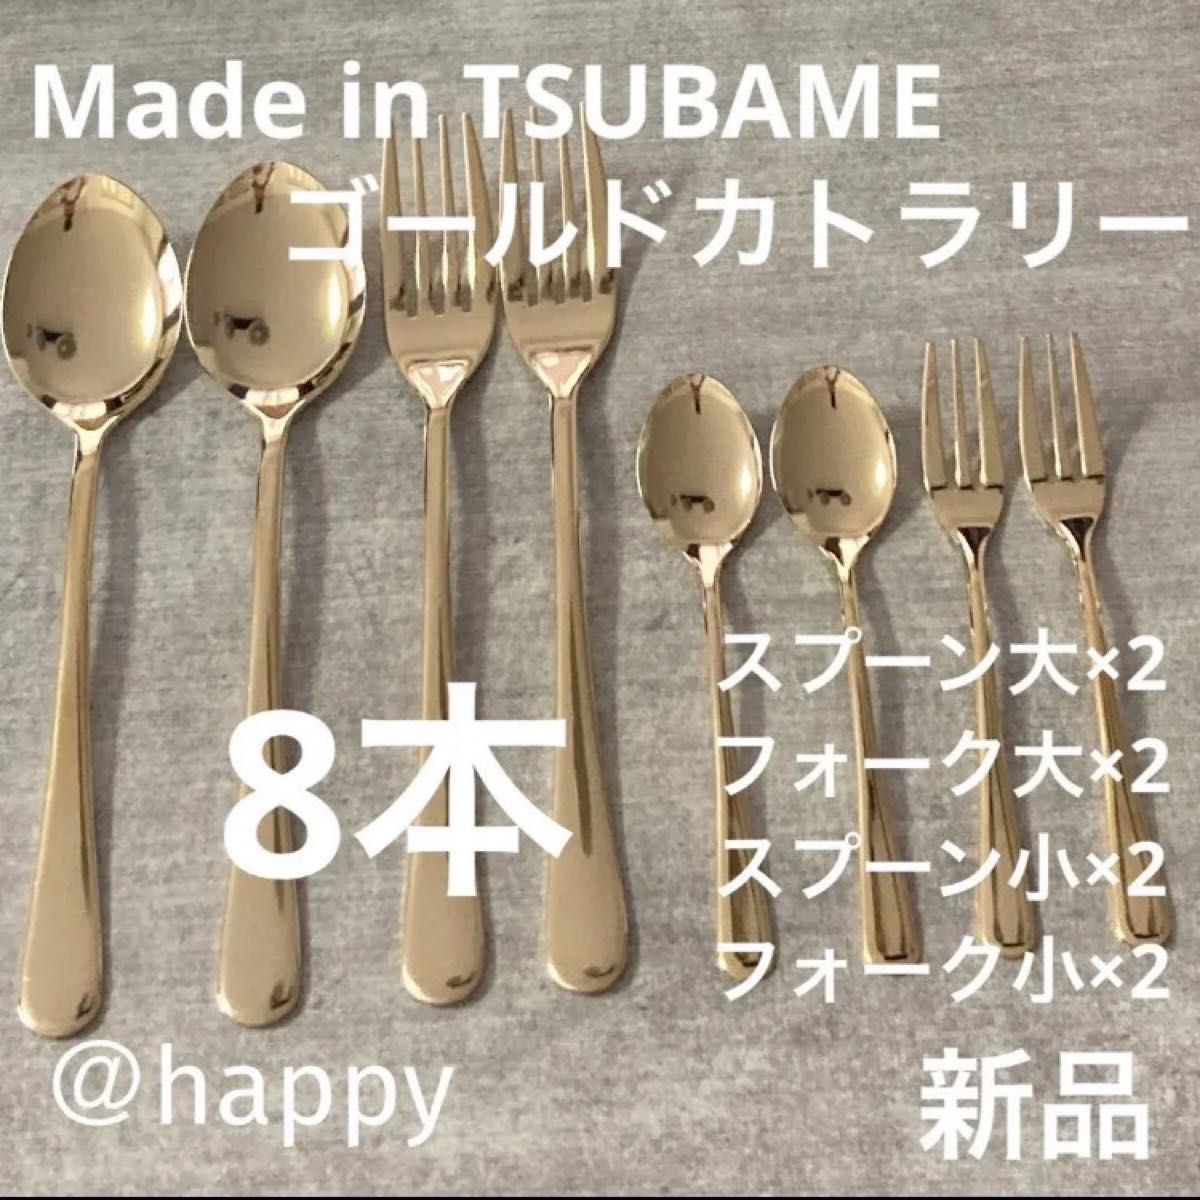 ツバメカトラリー 10点 made in TSUBAME 燕■新品未使用